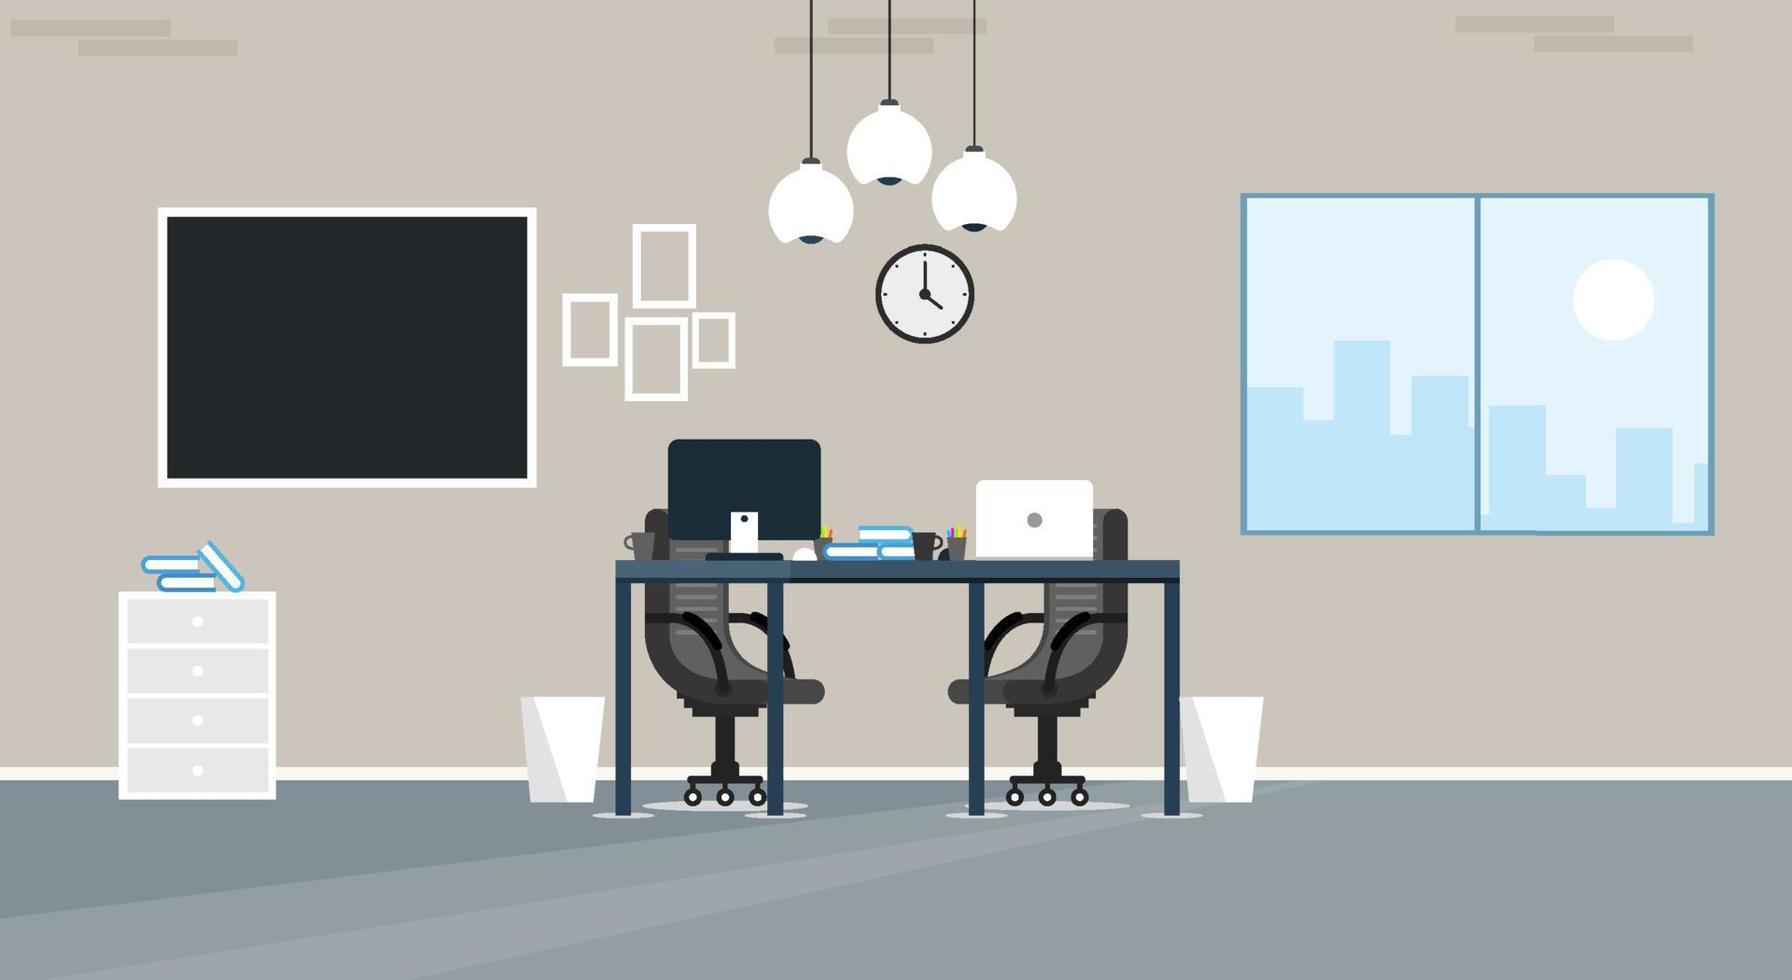 apprendre et enseigner le bureau d'affaires pour travailler à l'intérieur moderne, armoire de bureau avec illustration vectorielle colorée d'ordinateur dans la conception de vecteur de style dessin animé plat